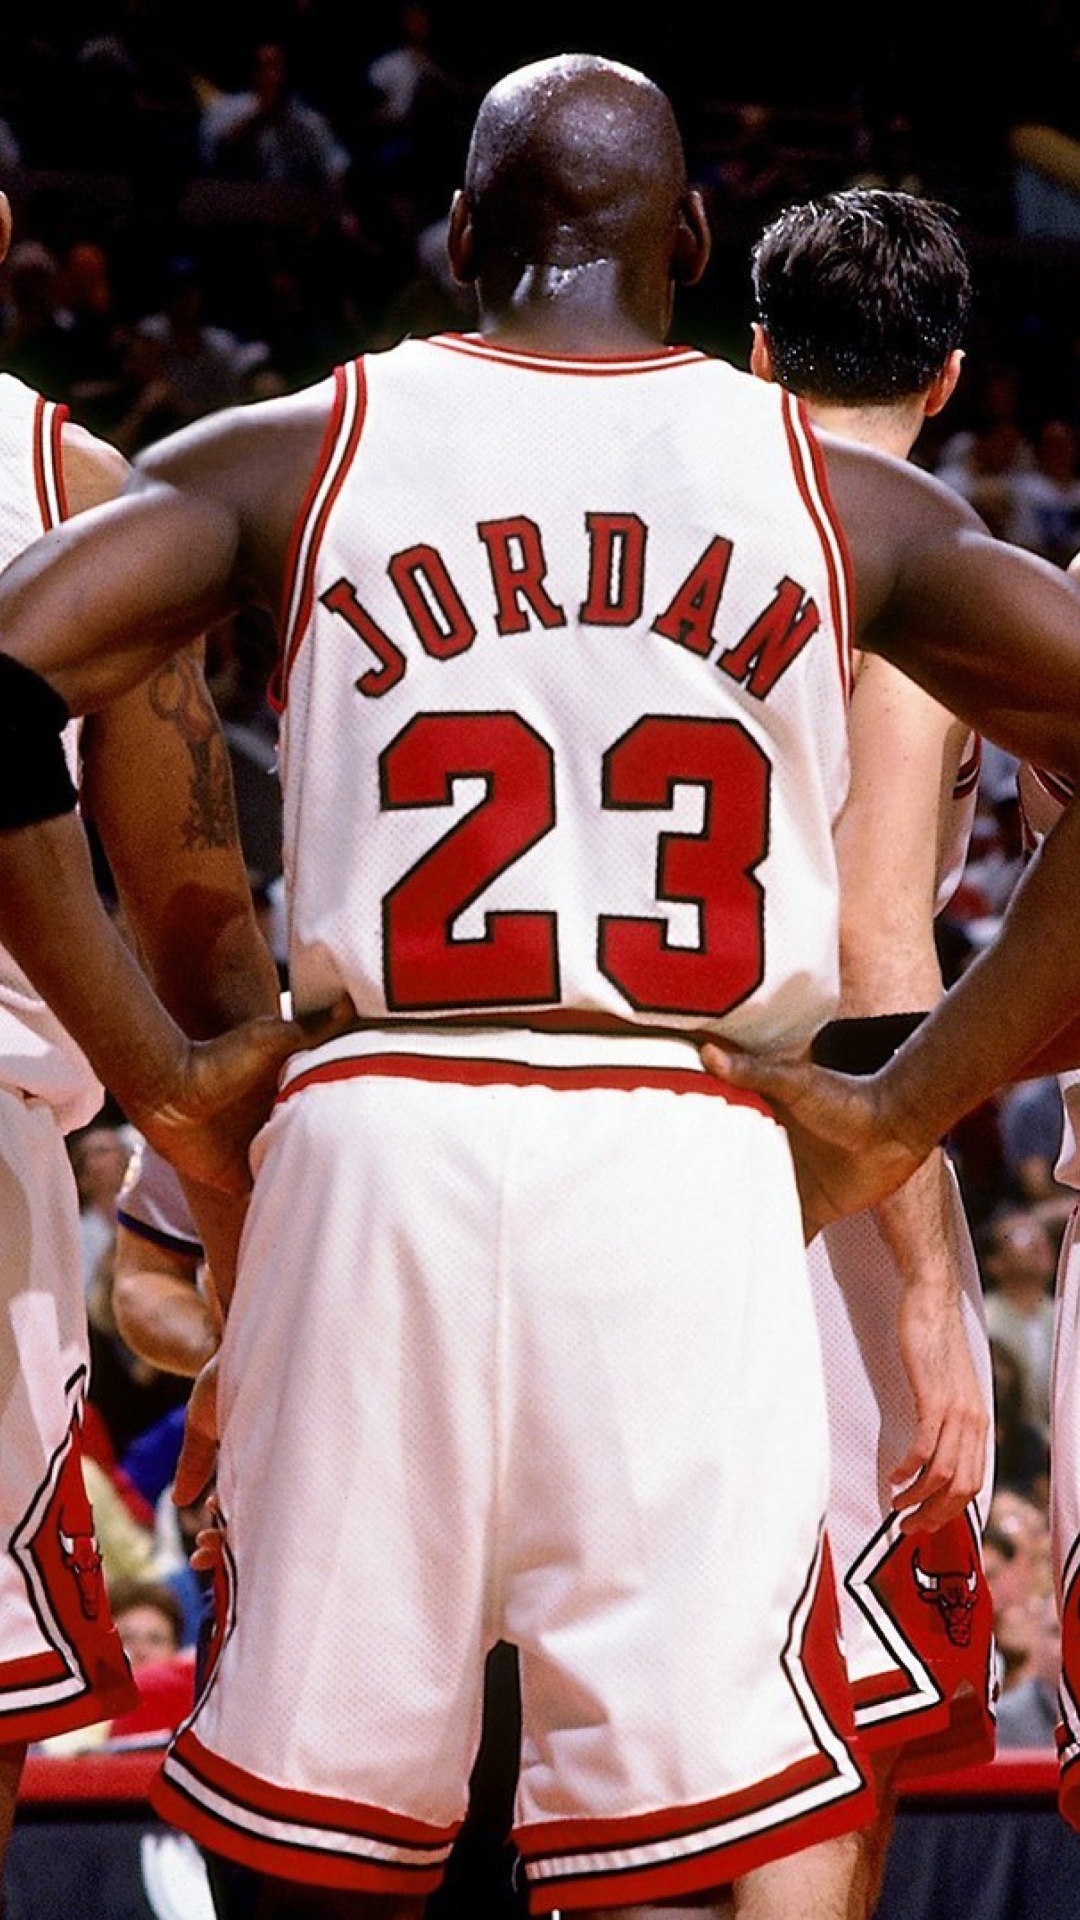 Das Chicago Bulls with Jordan, Pippen, Rodman Wallpaper 1080x1920